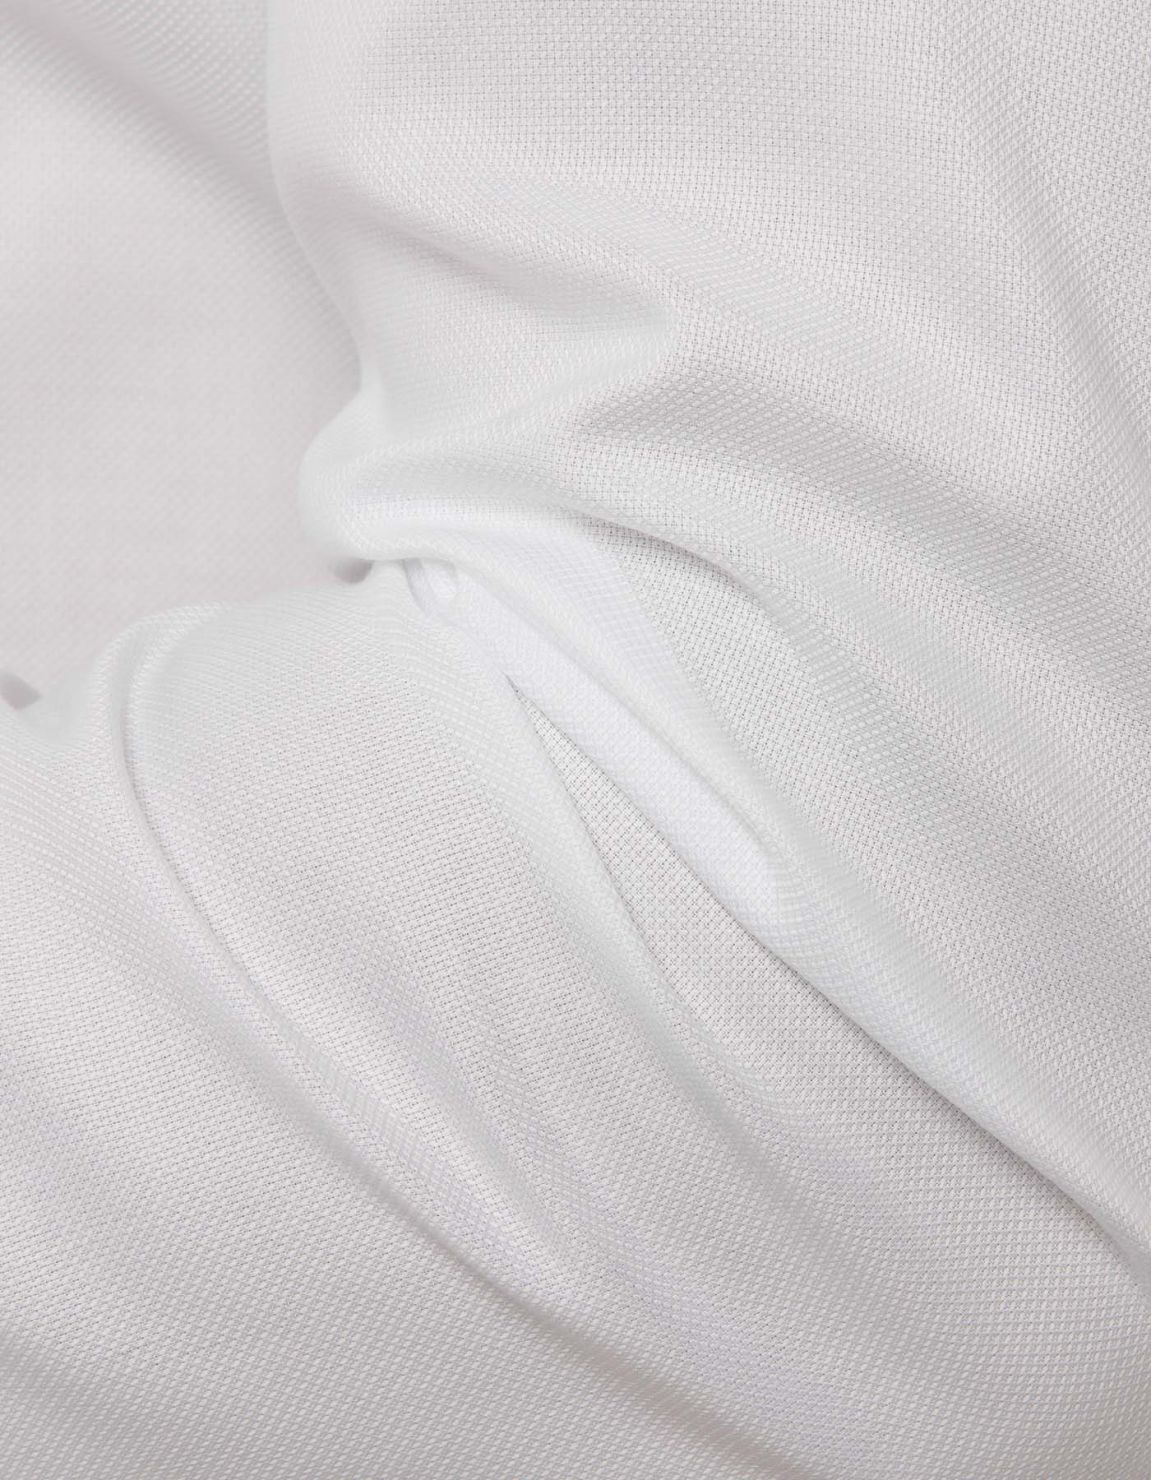 Camisa Cuello cuello abotonado Liso Oxford Blanco Evolution Classic Fit 2